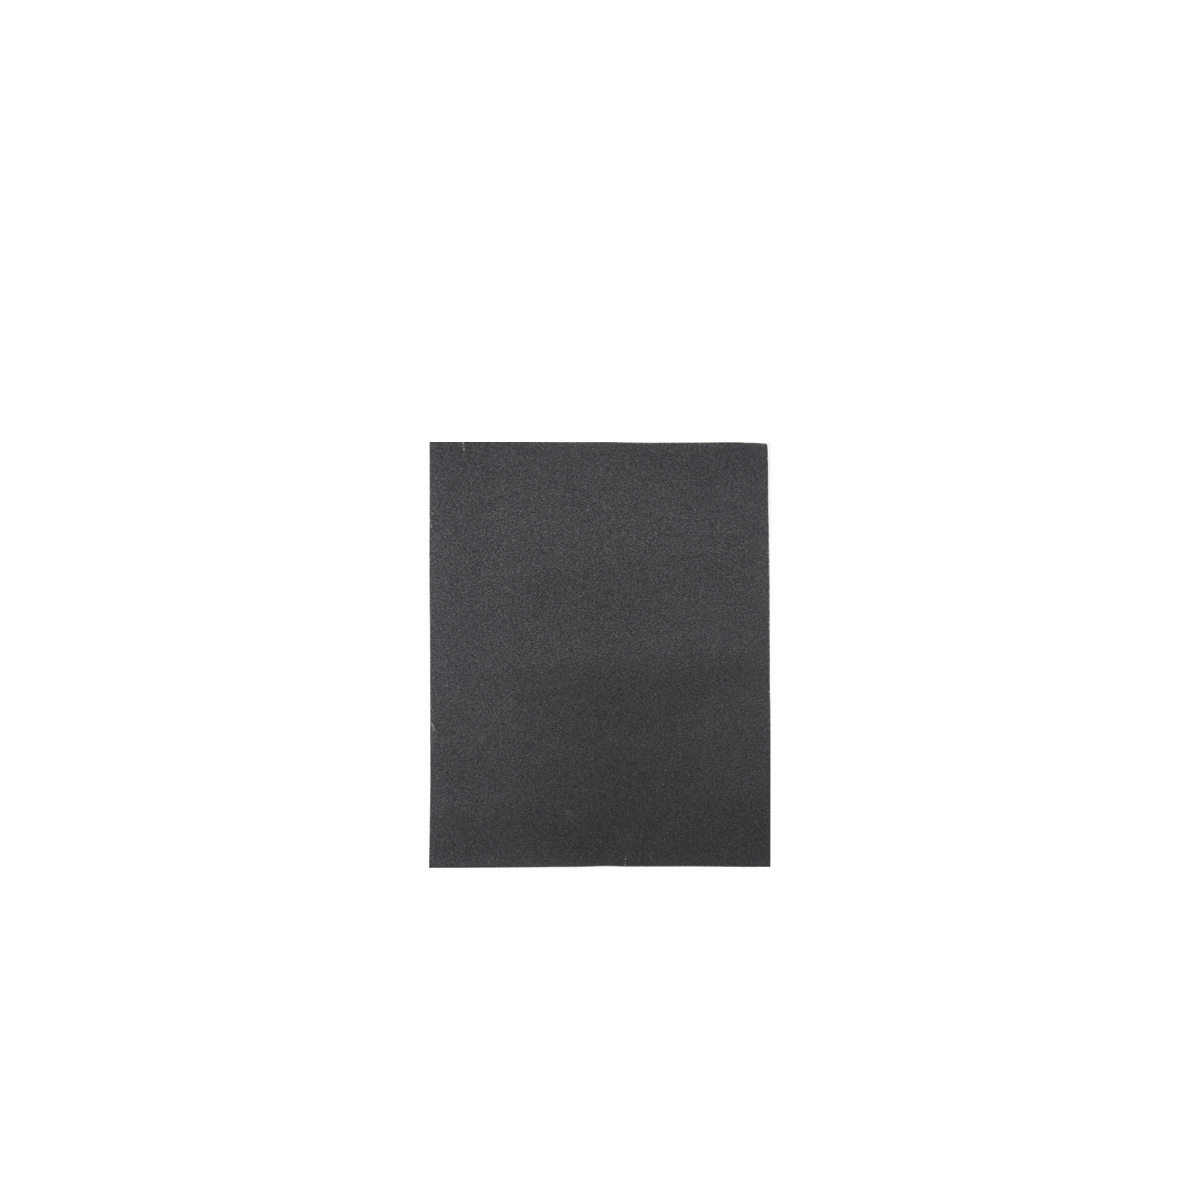 Лист шлифовальный Кедр, P 800, 230 x 280 мм, водостойкий,  бумага, 10 шт лист шлифовальный 3m для обработки поверхностей светло серый 158х224 мм